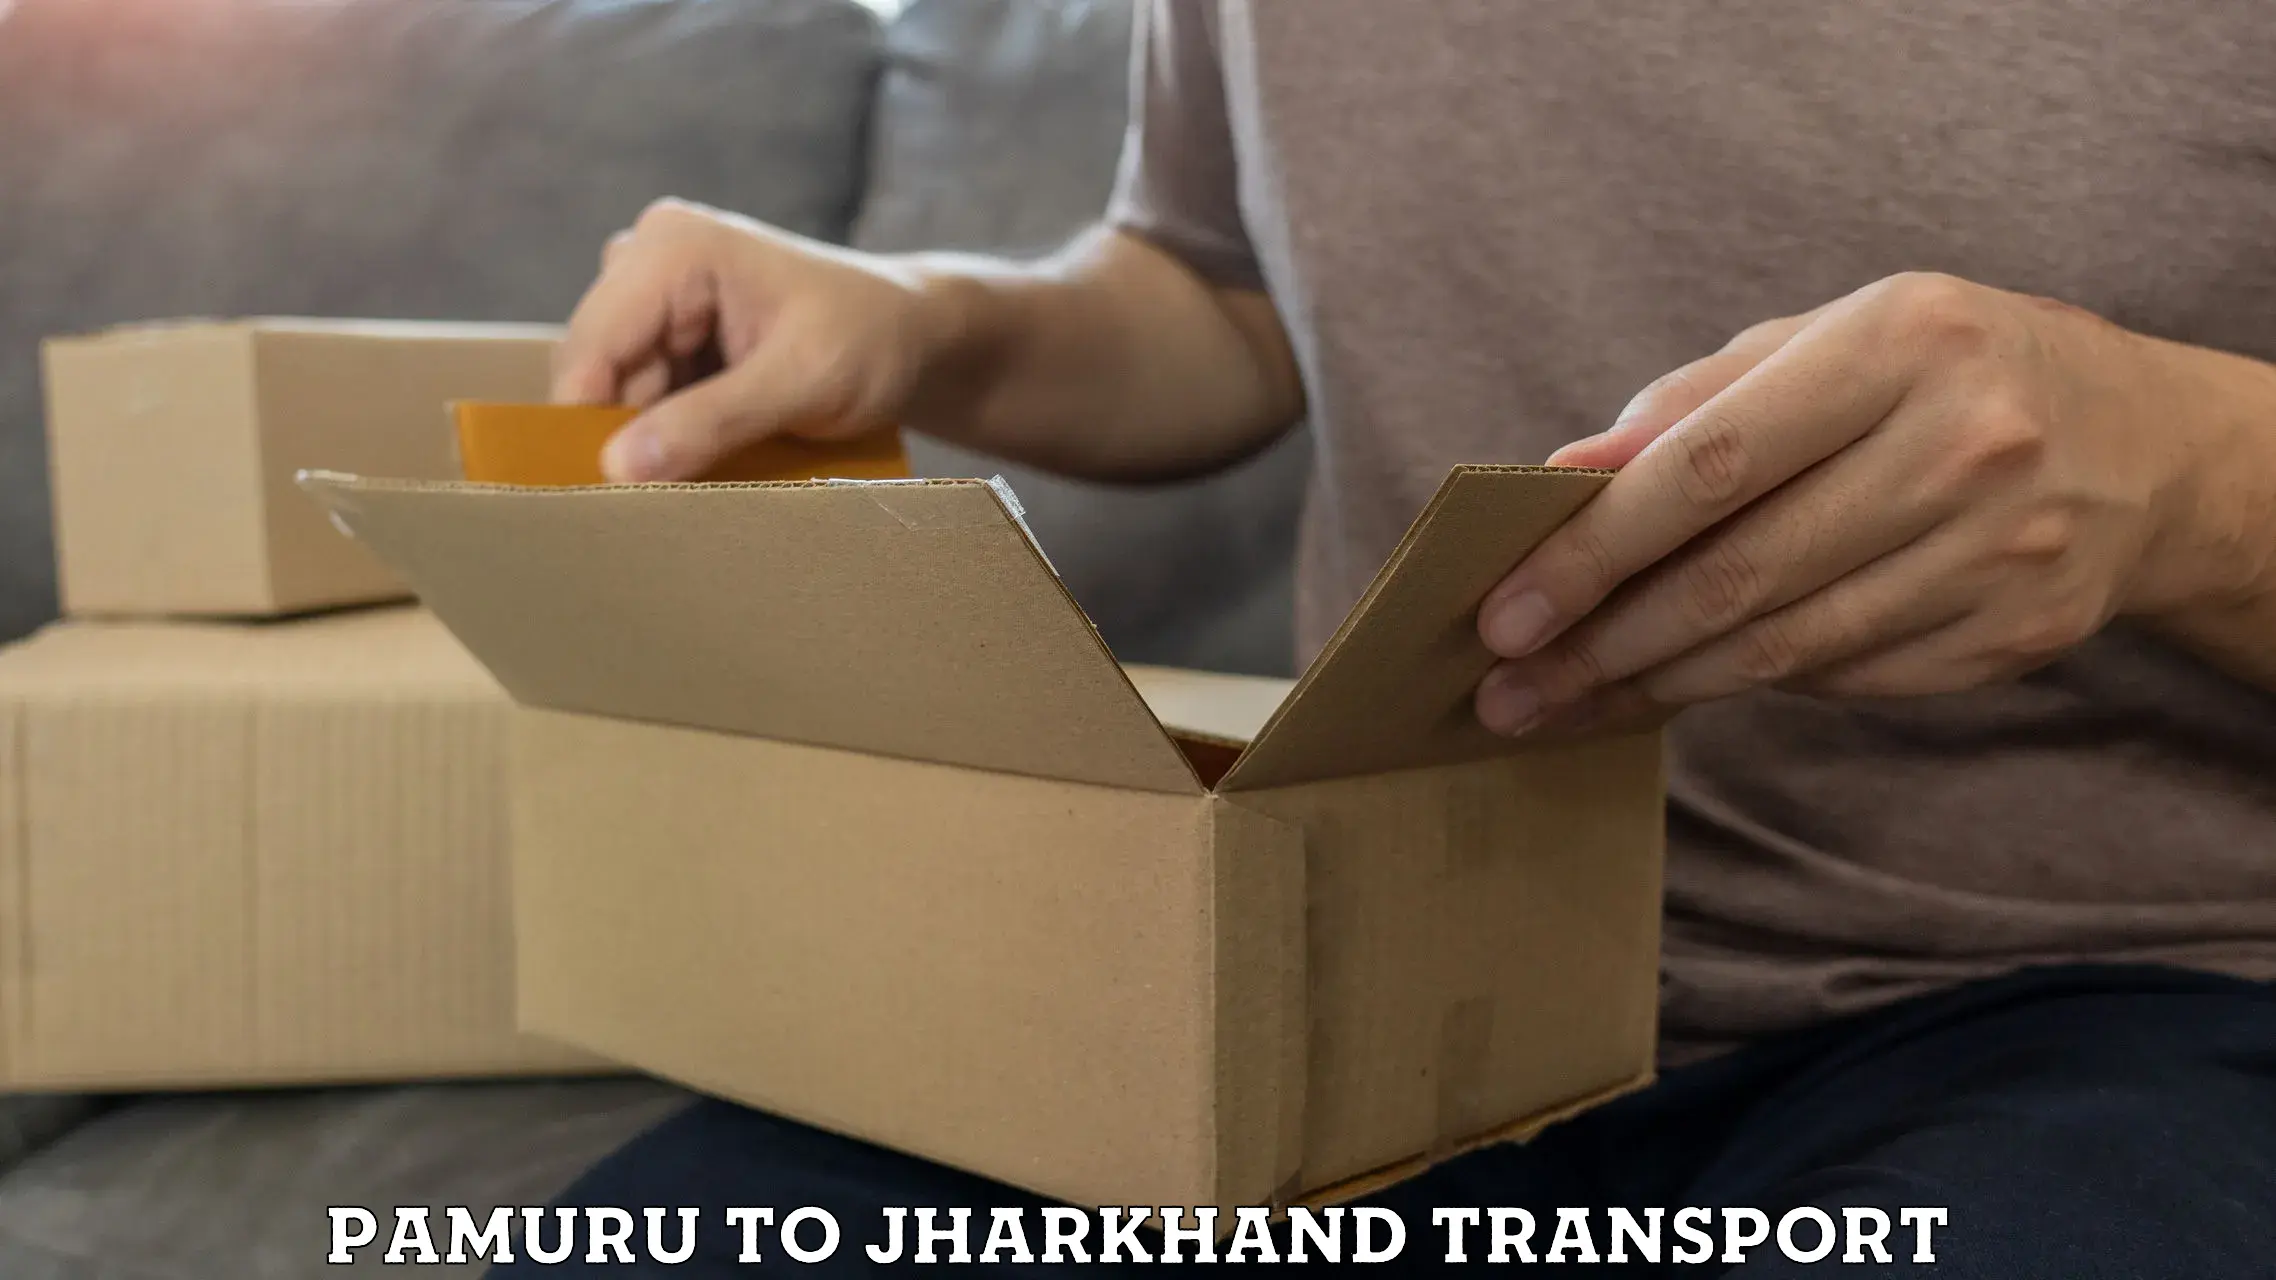 Part load transport service in India Pamuru to Chandankiyari